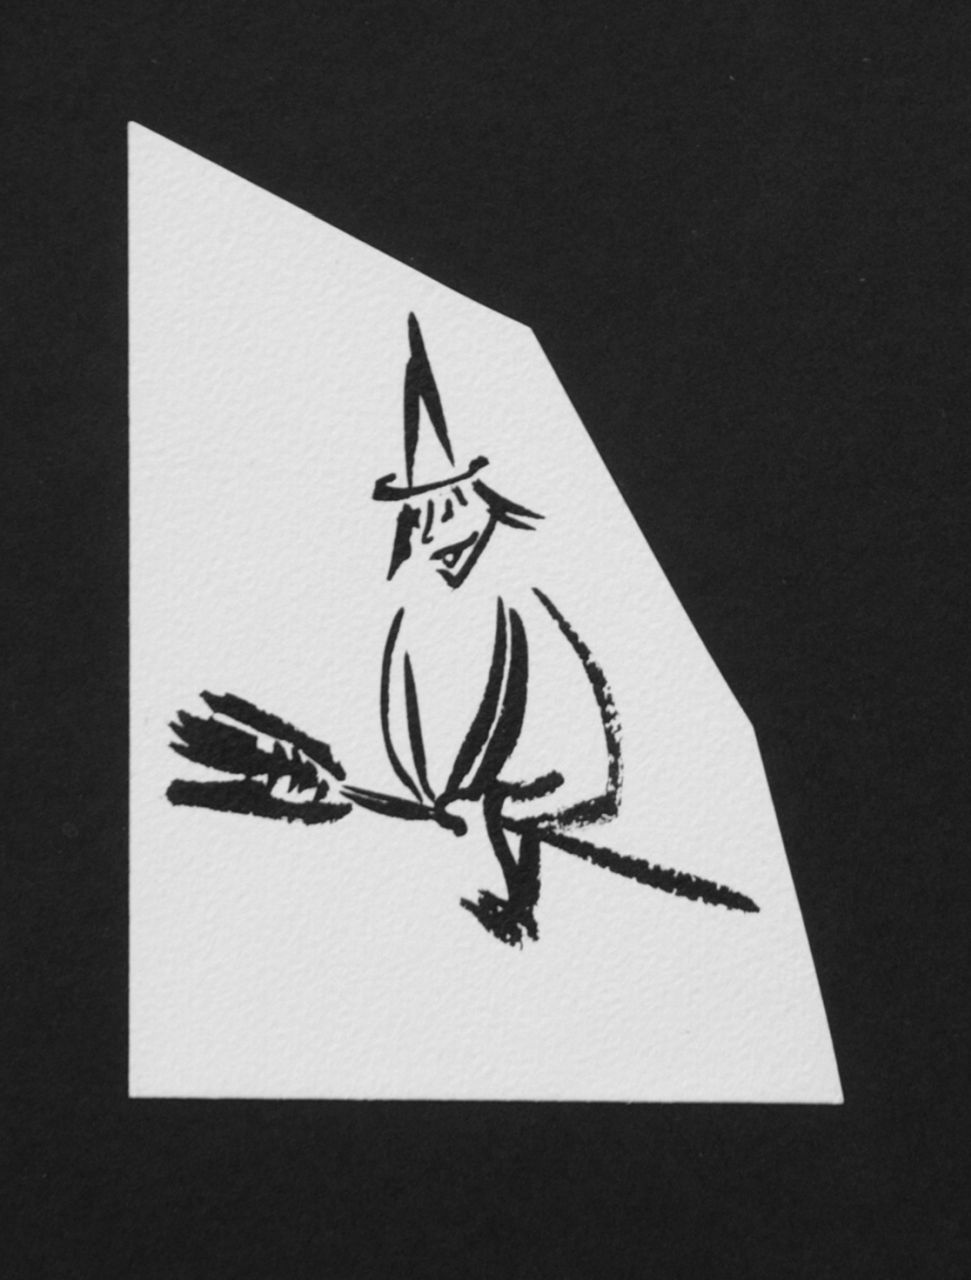 Oranje-Nassau (Prinses Beatrix) B.W.A. van | Beatrix Wilhelmina Armgard van Oranje-Nassau (Prinses Beatrix), Witch on a broomstick, Bleistift und Ausziehtusche auf Papier 11,0 x 8,0 cm, executed August 1960